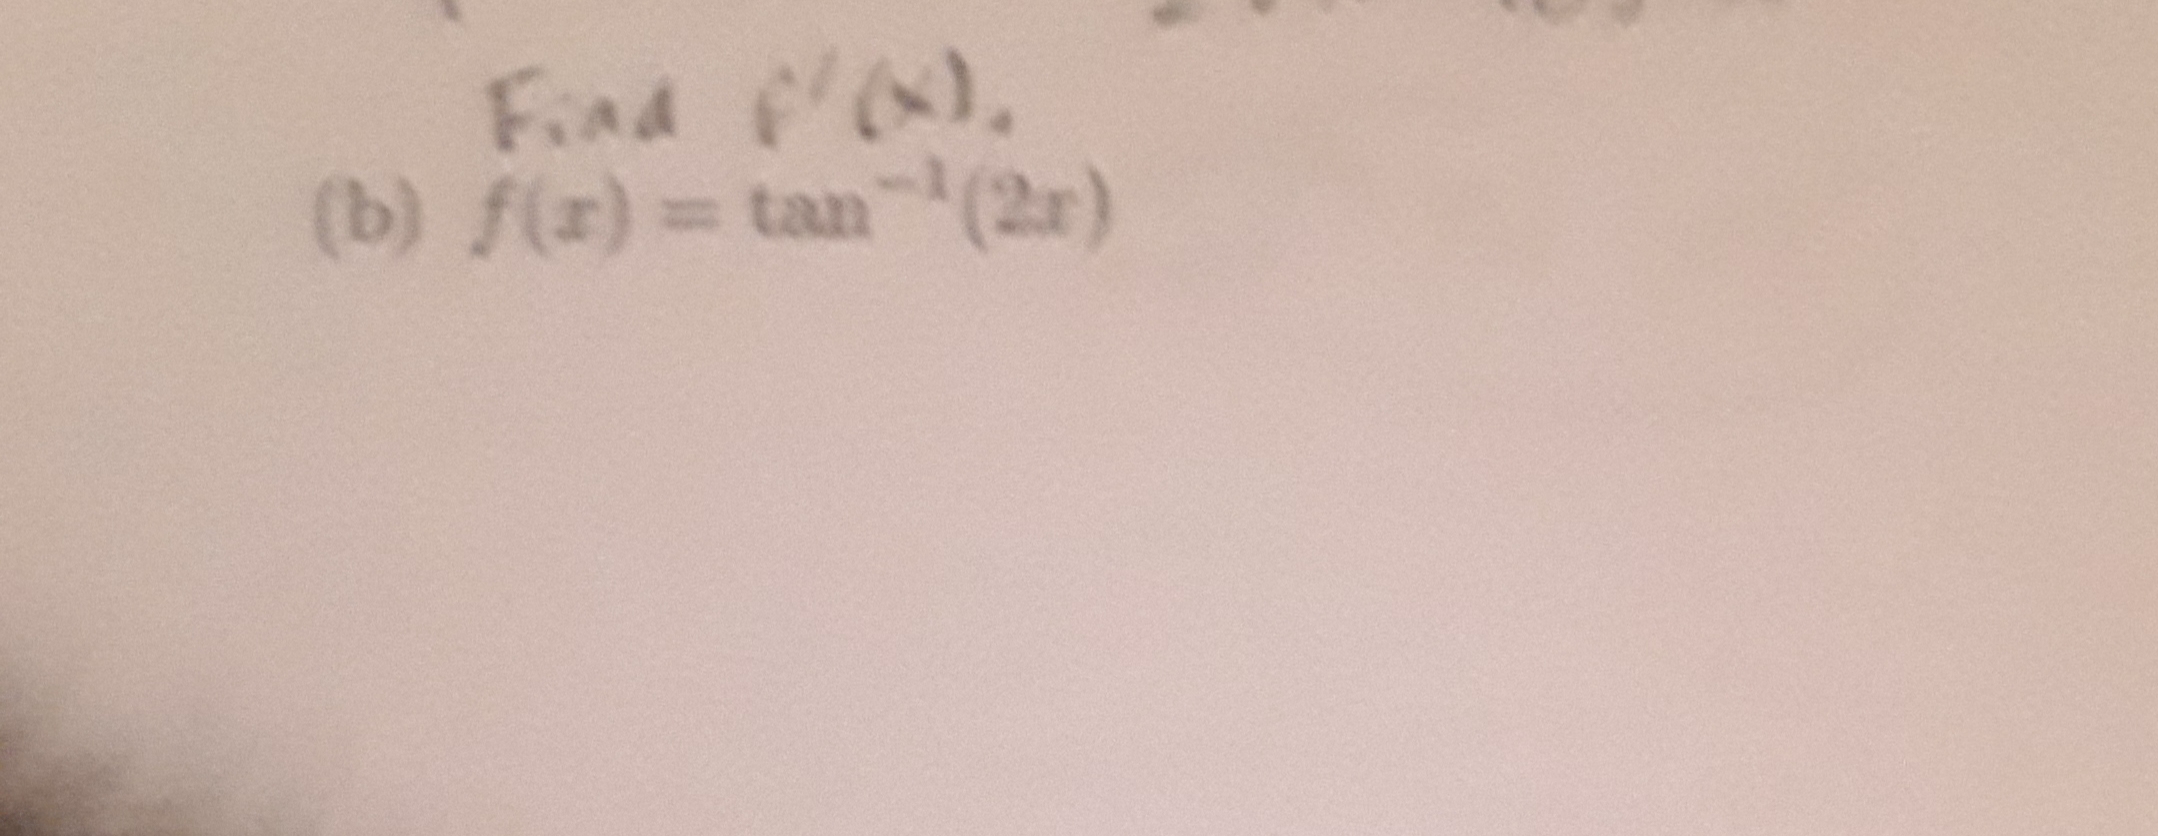 Find f),
(b) f(r) tan(2r)
